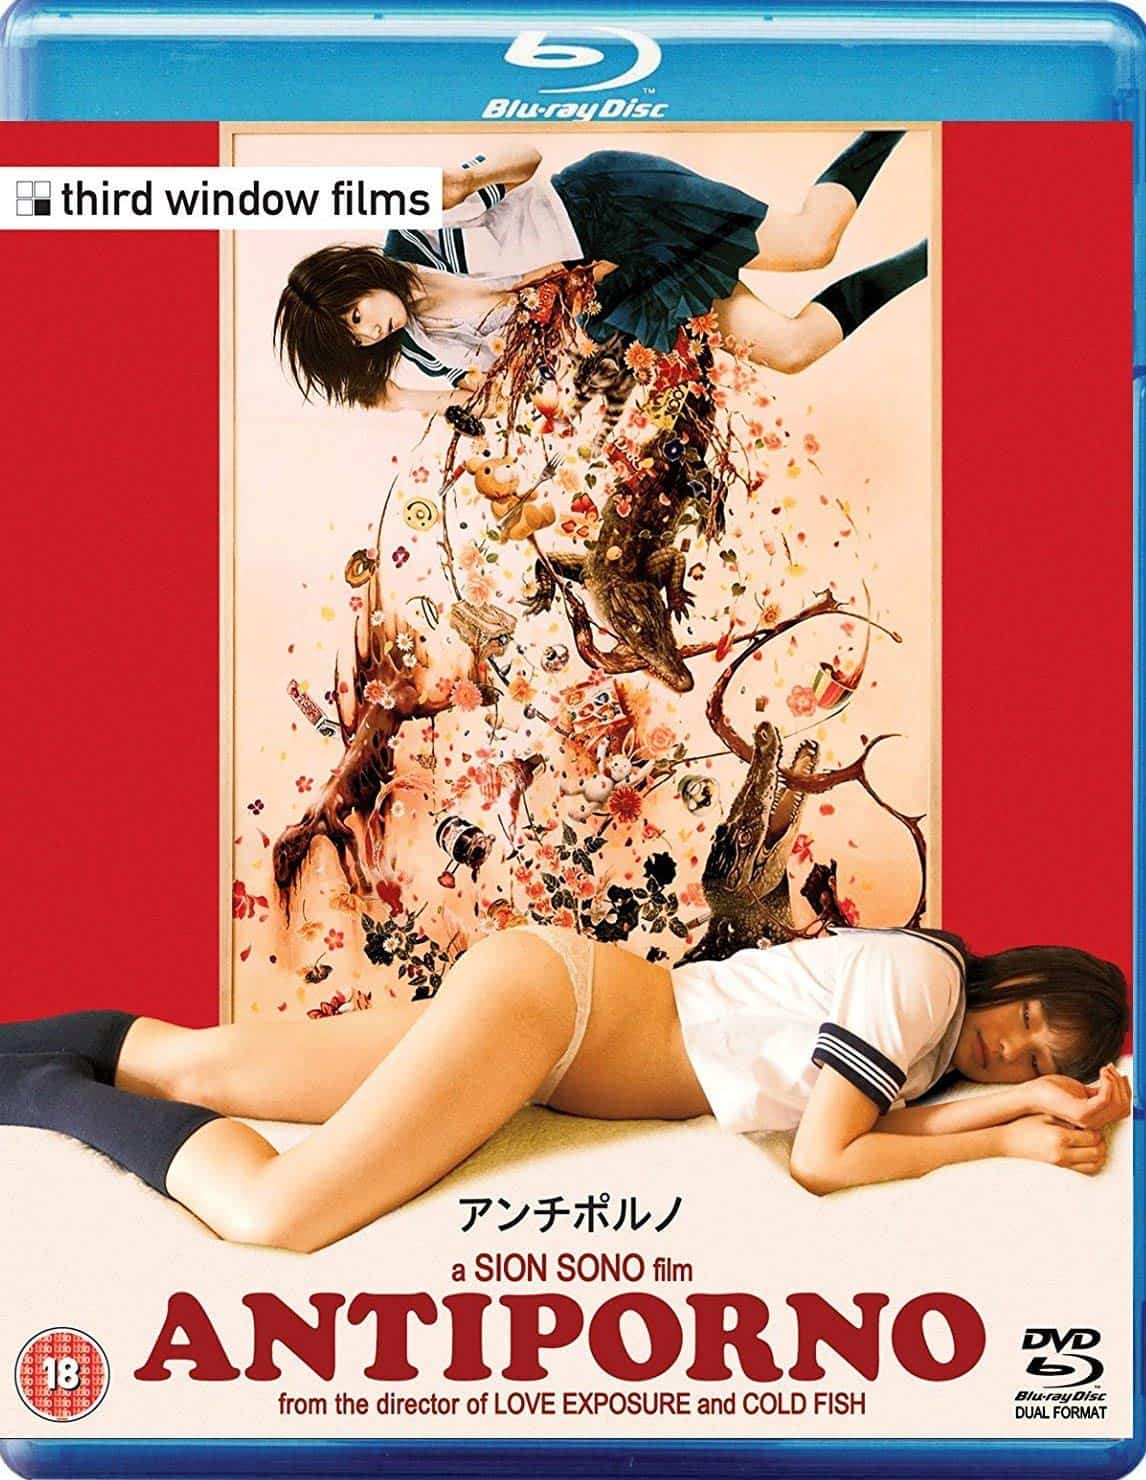 Movie adult japan